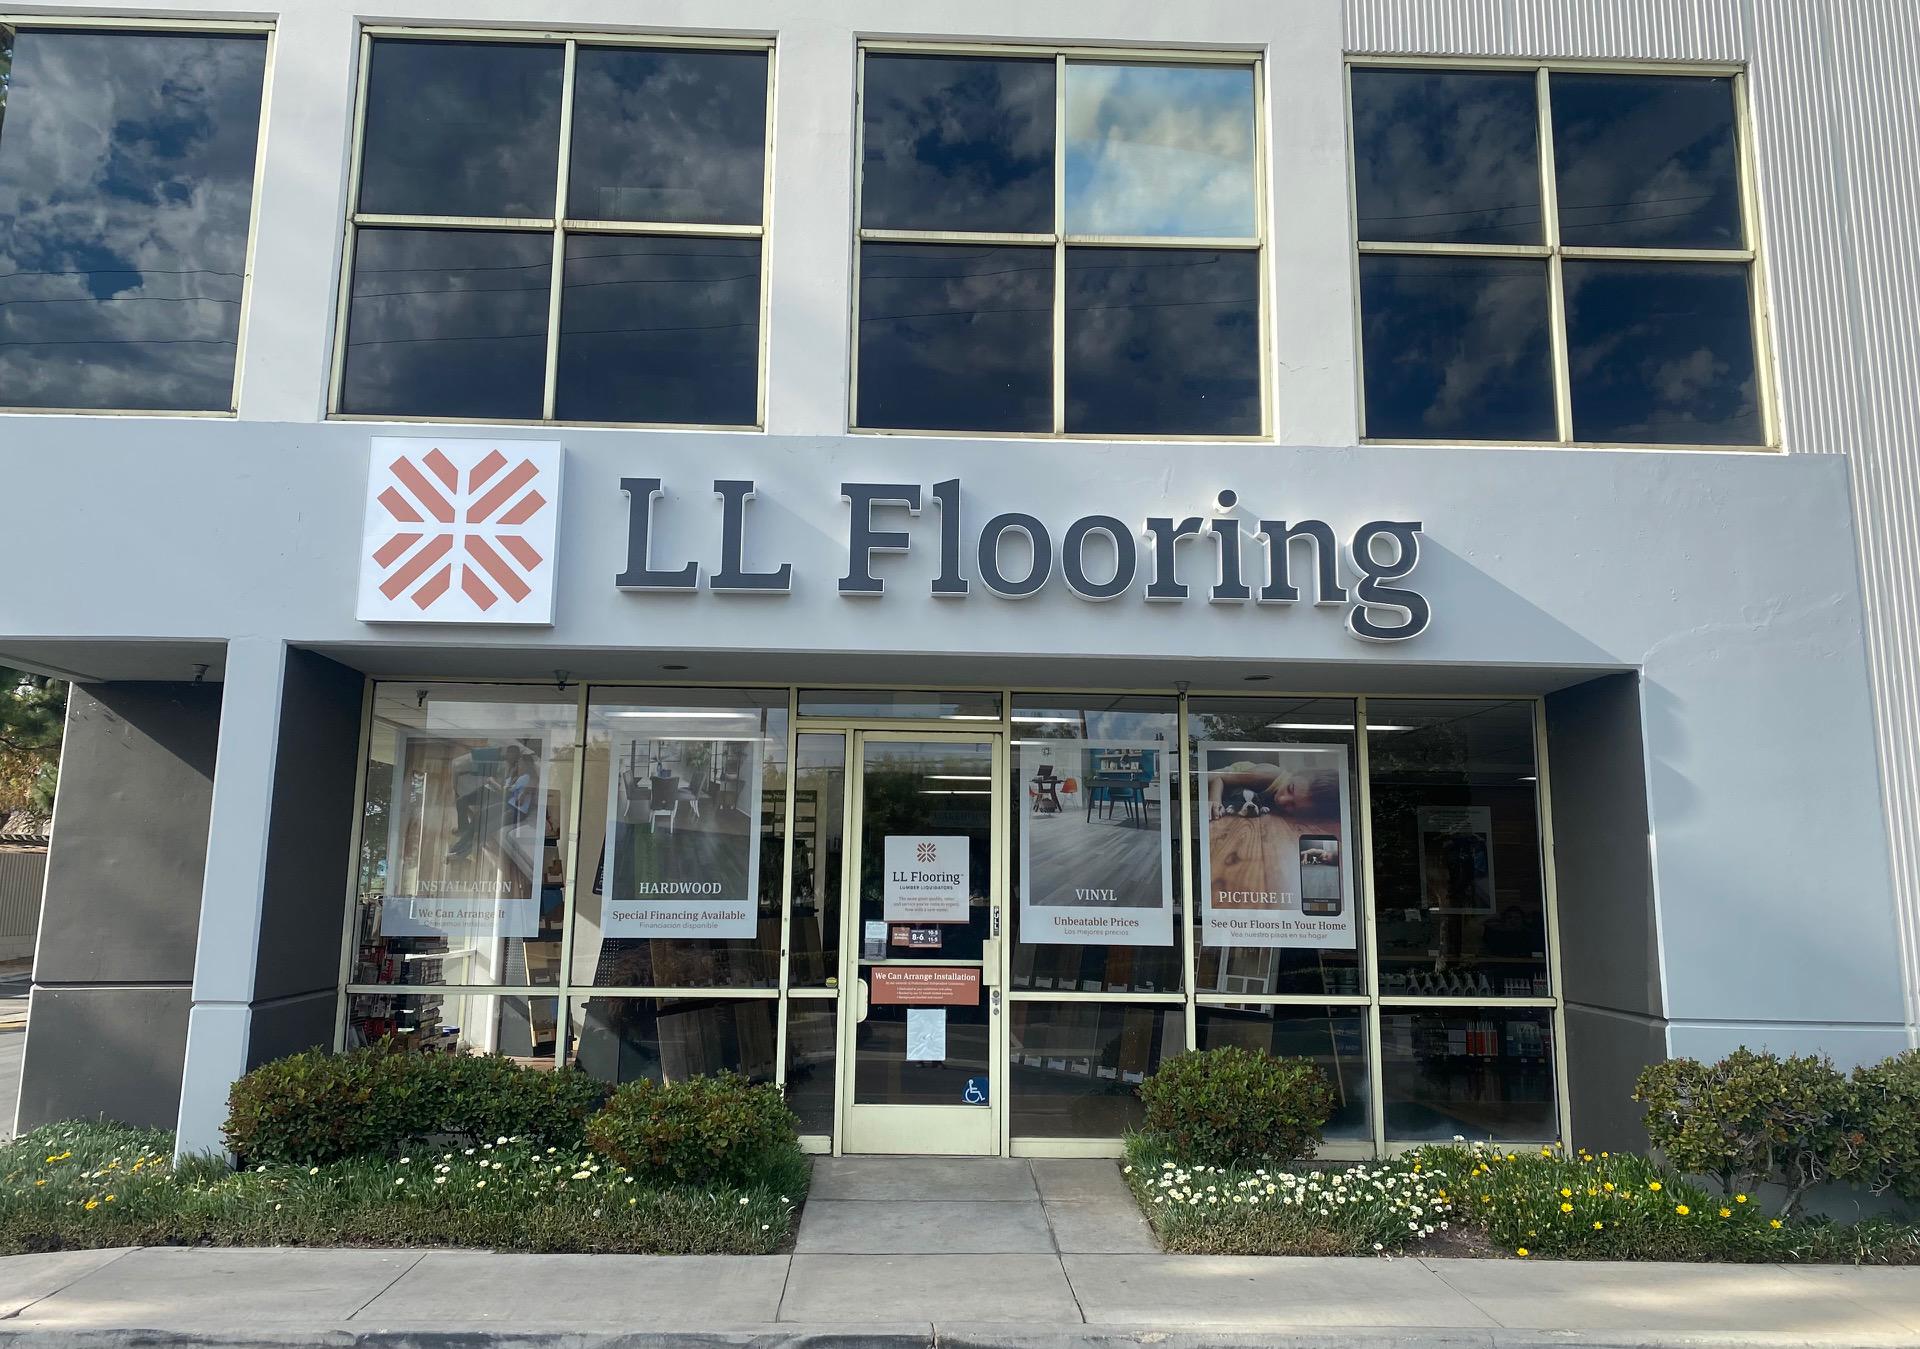 LL Flooring (Lumber Liquidators) 16735 Roscoe Blvd, North Hills California 91343